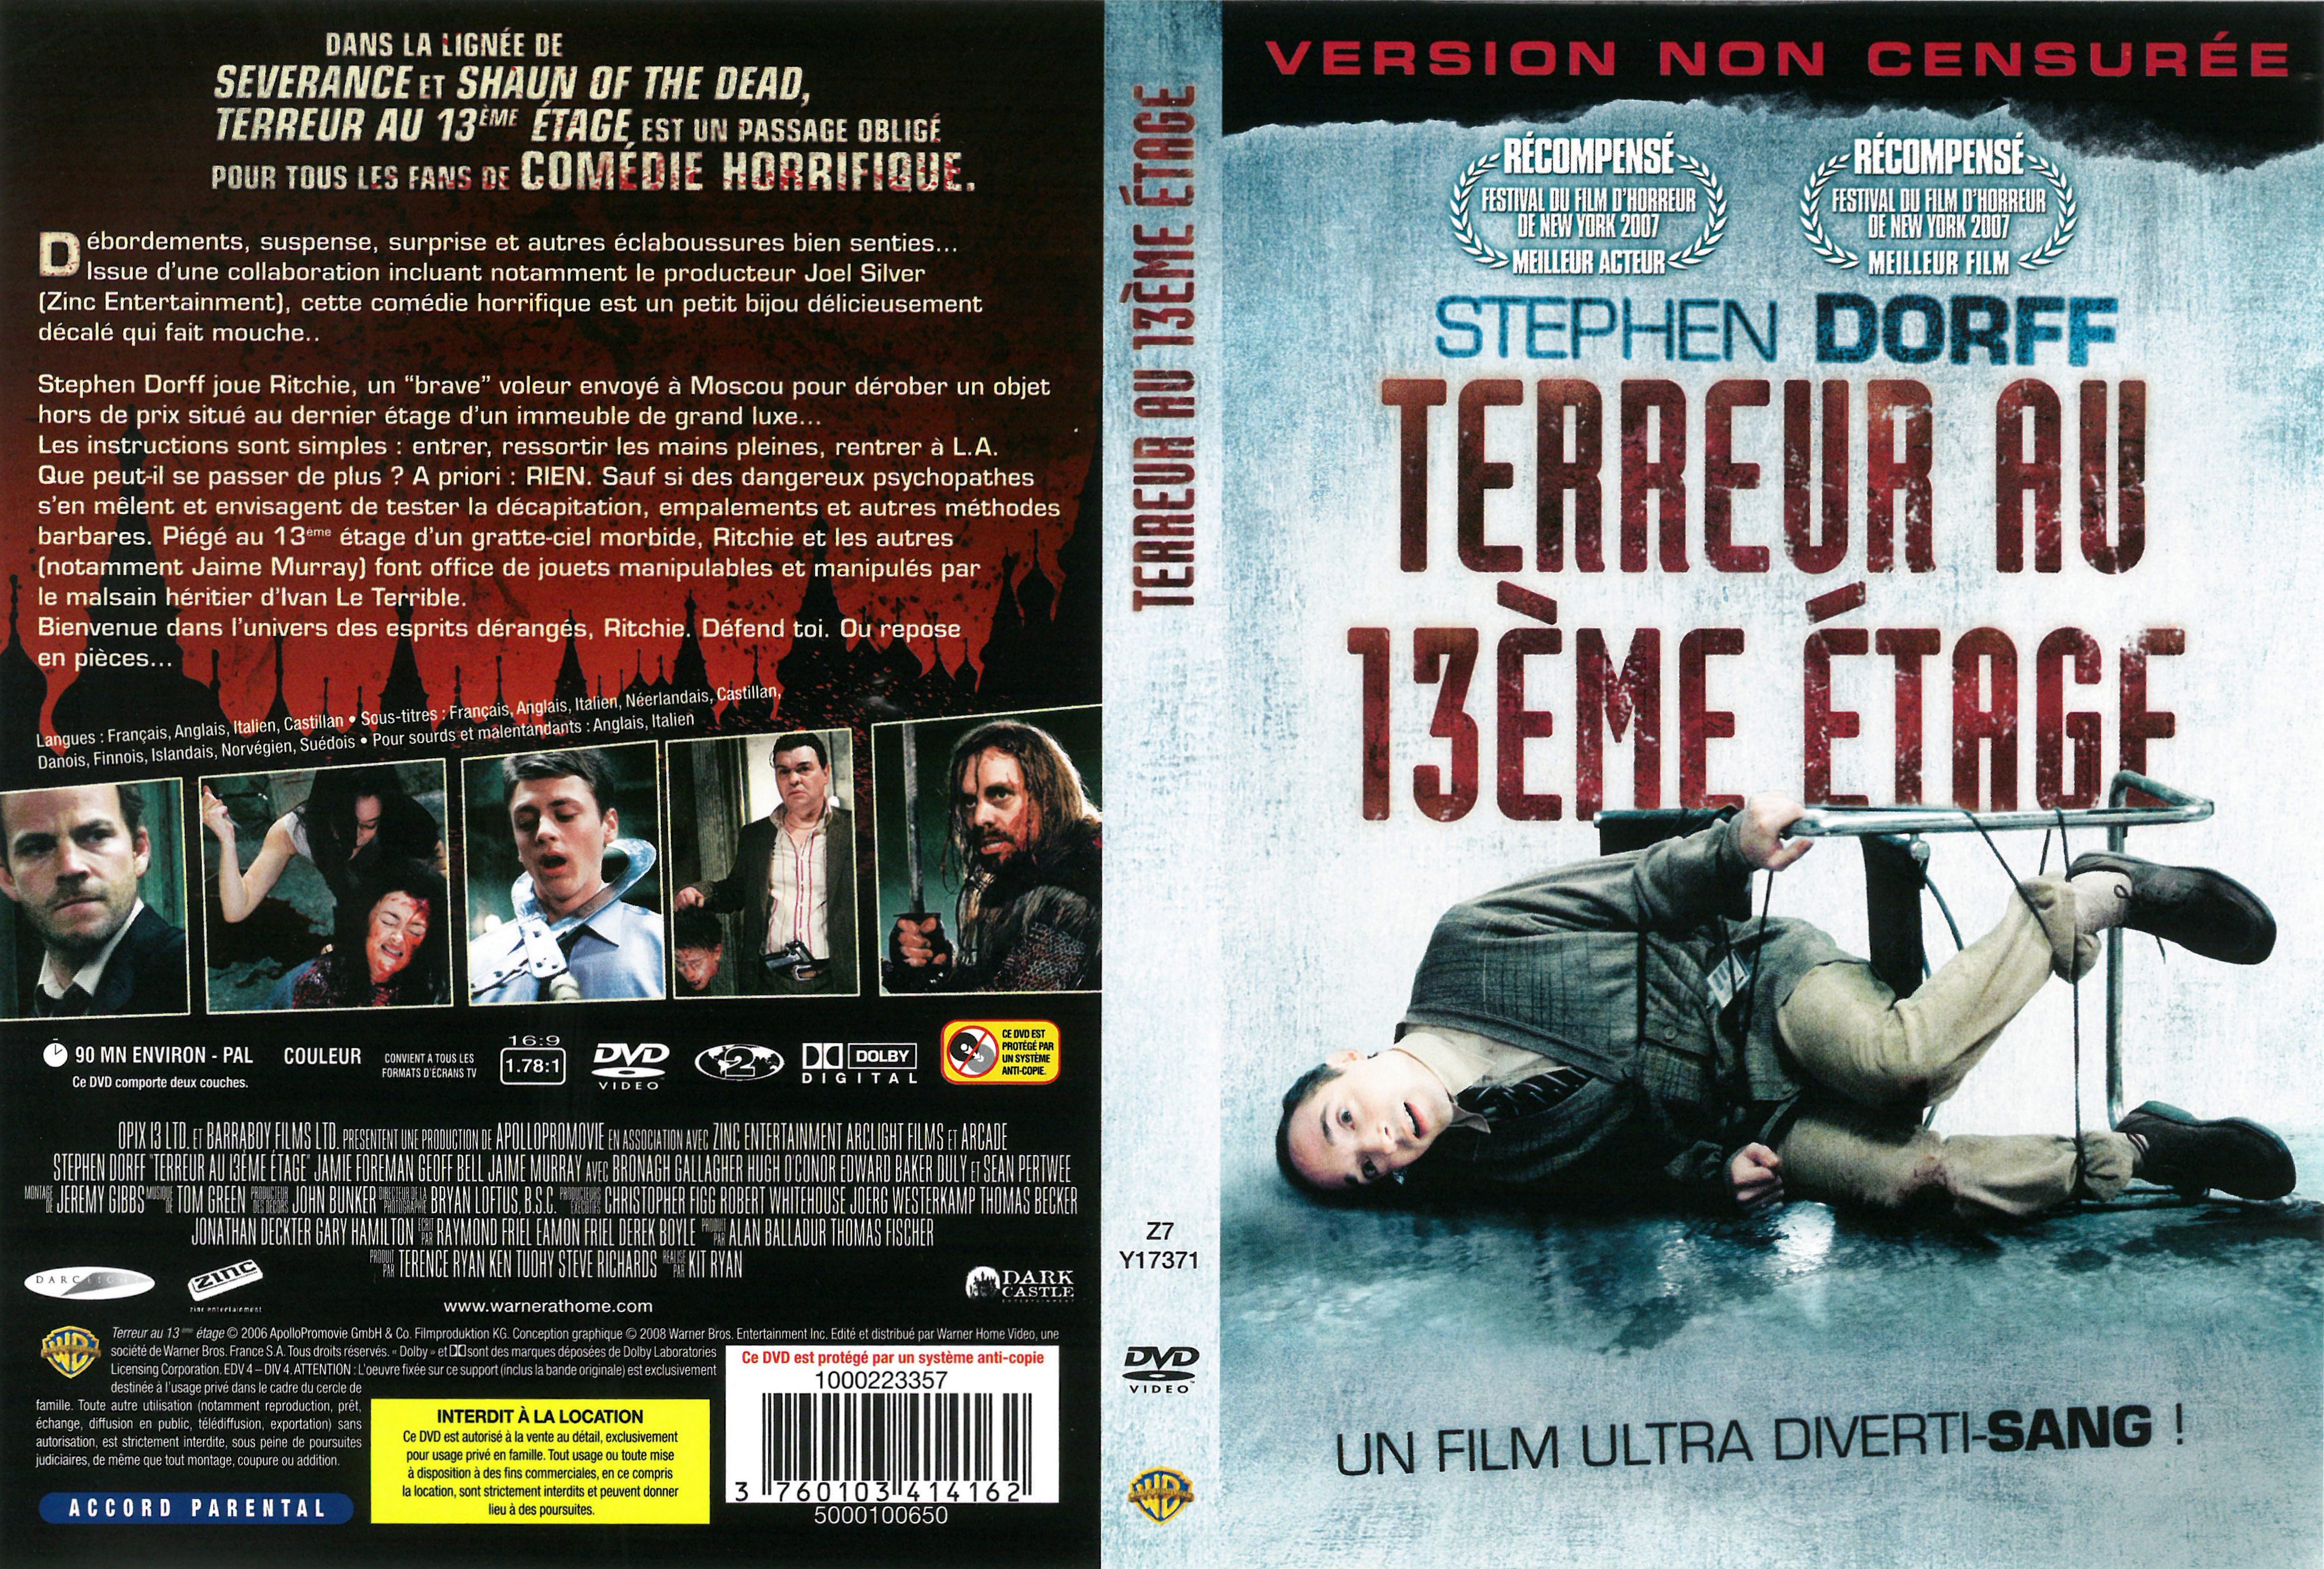 Jaquette DVD Terreur au 13 eme tage v2